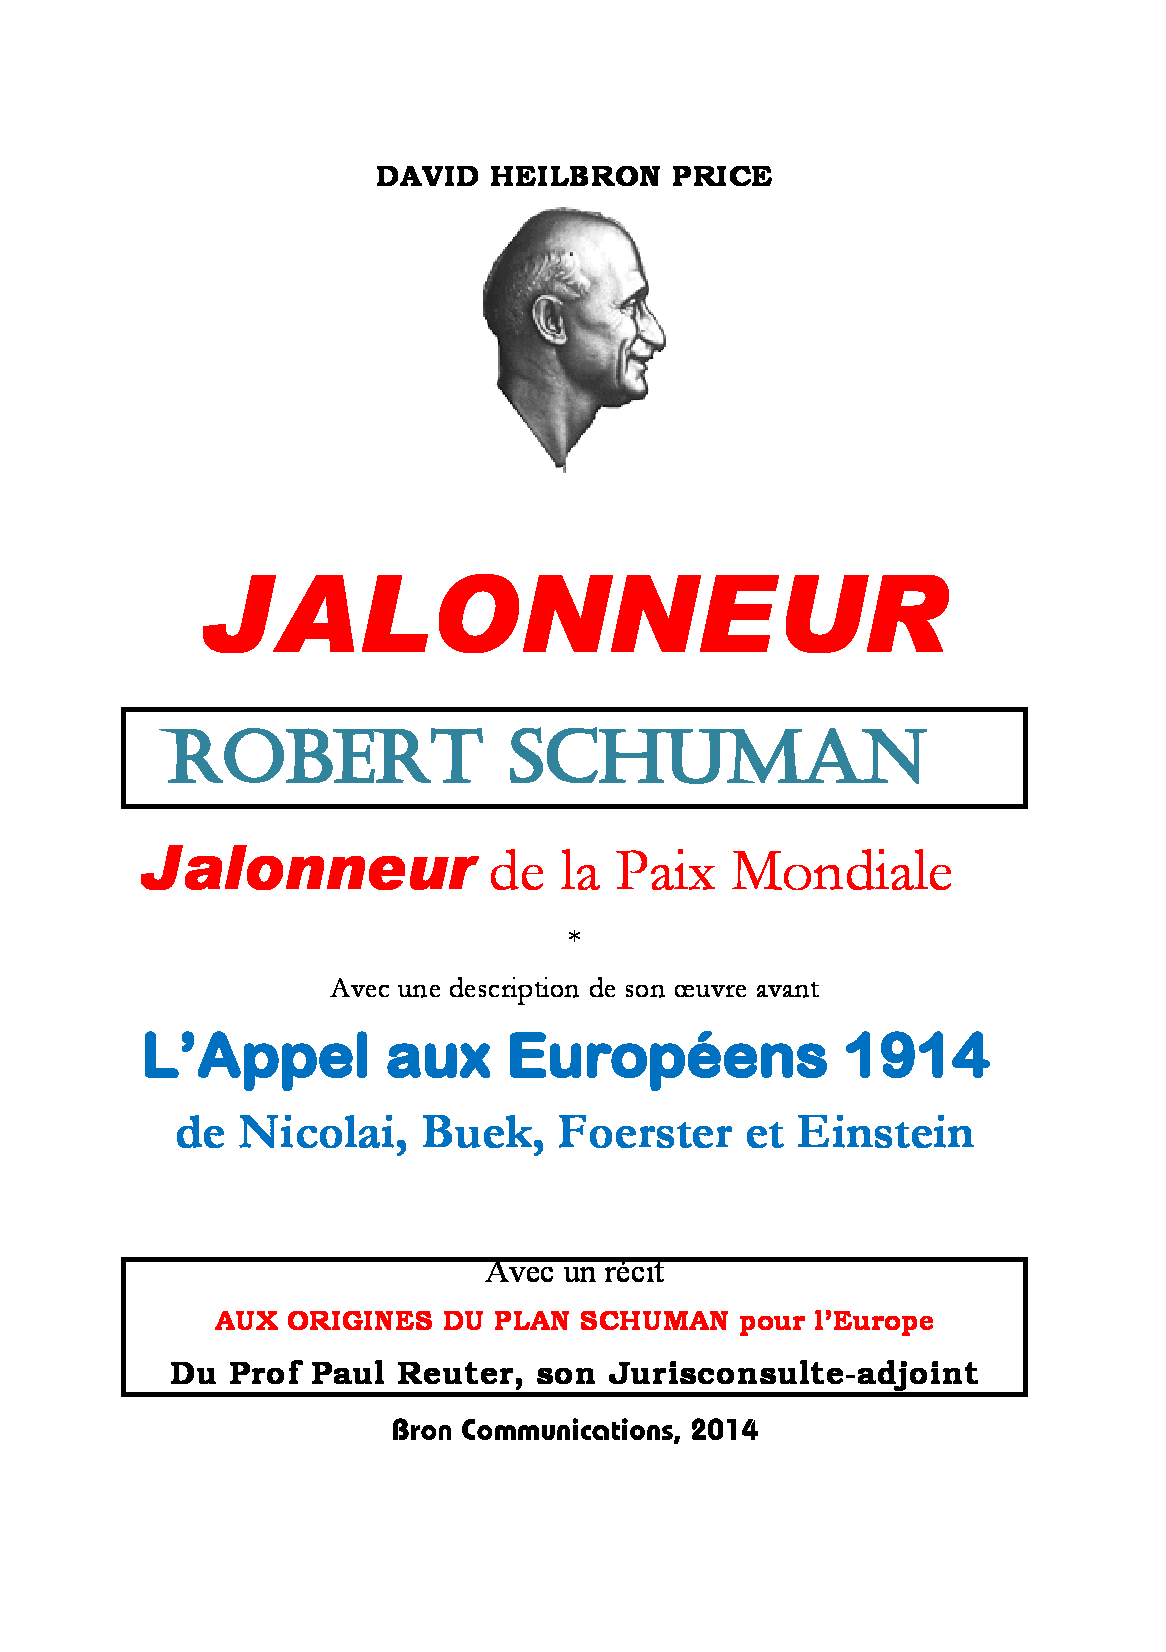 Robert Schuman, Jalonneur
              de la Paix mondiale